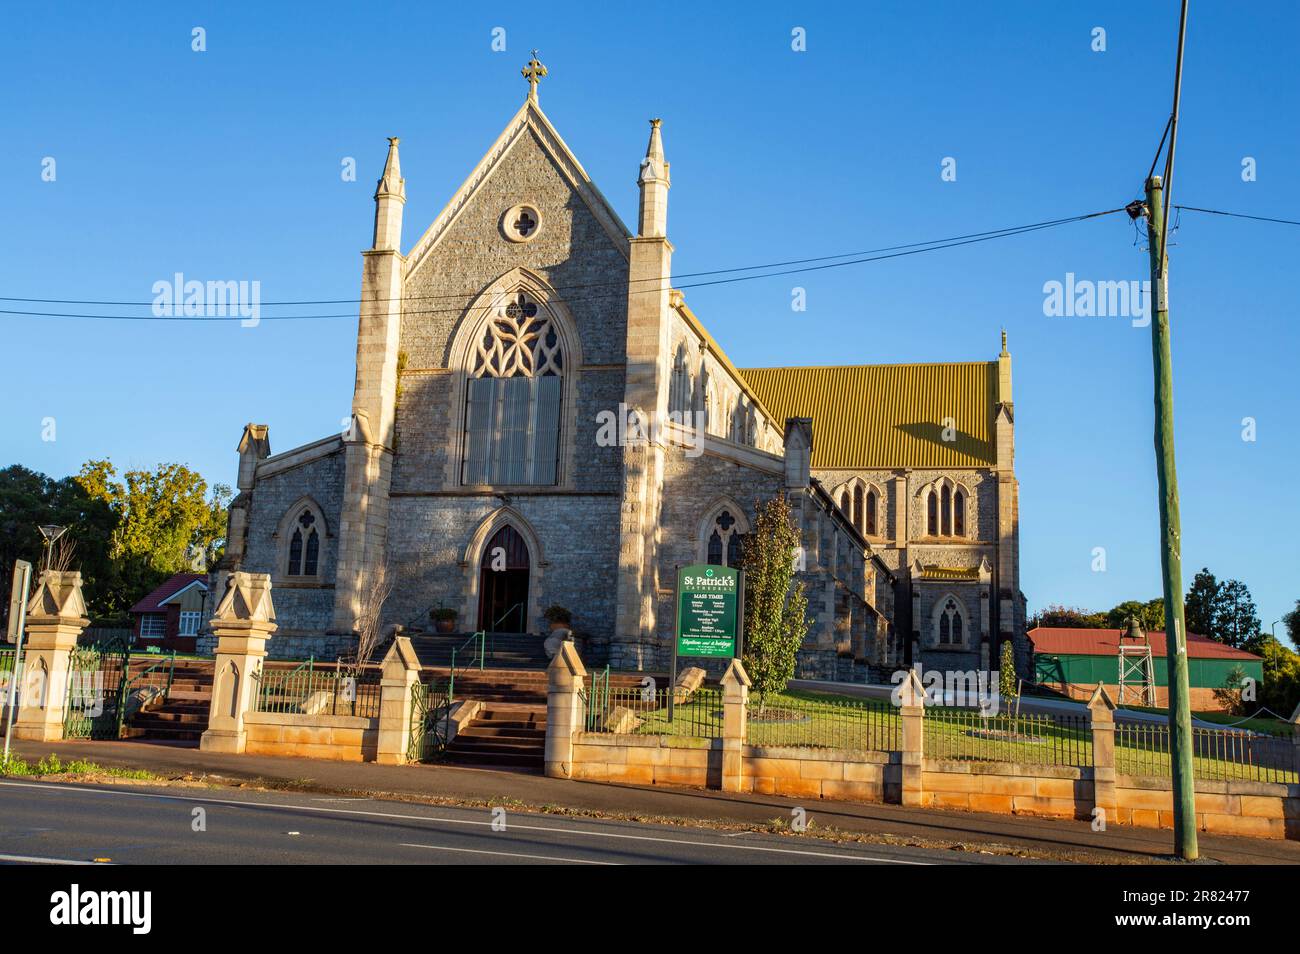 La cathédrale catholique de Saintt Patrick, classée au patrimoine, a été construite en 1889 dans un style gothique victorien, à James Street, Toowoomba, Queensland. Banque D'Images